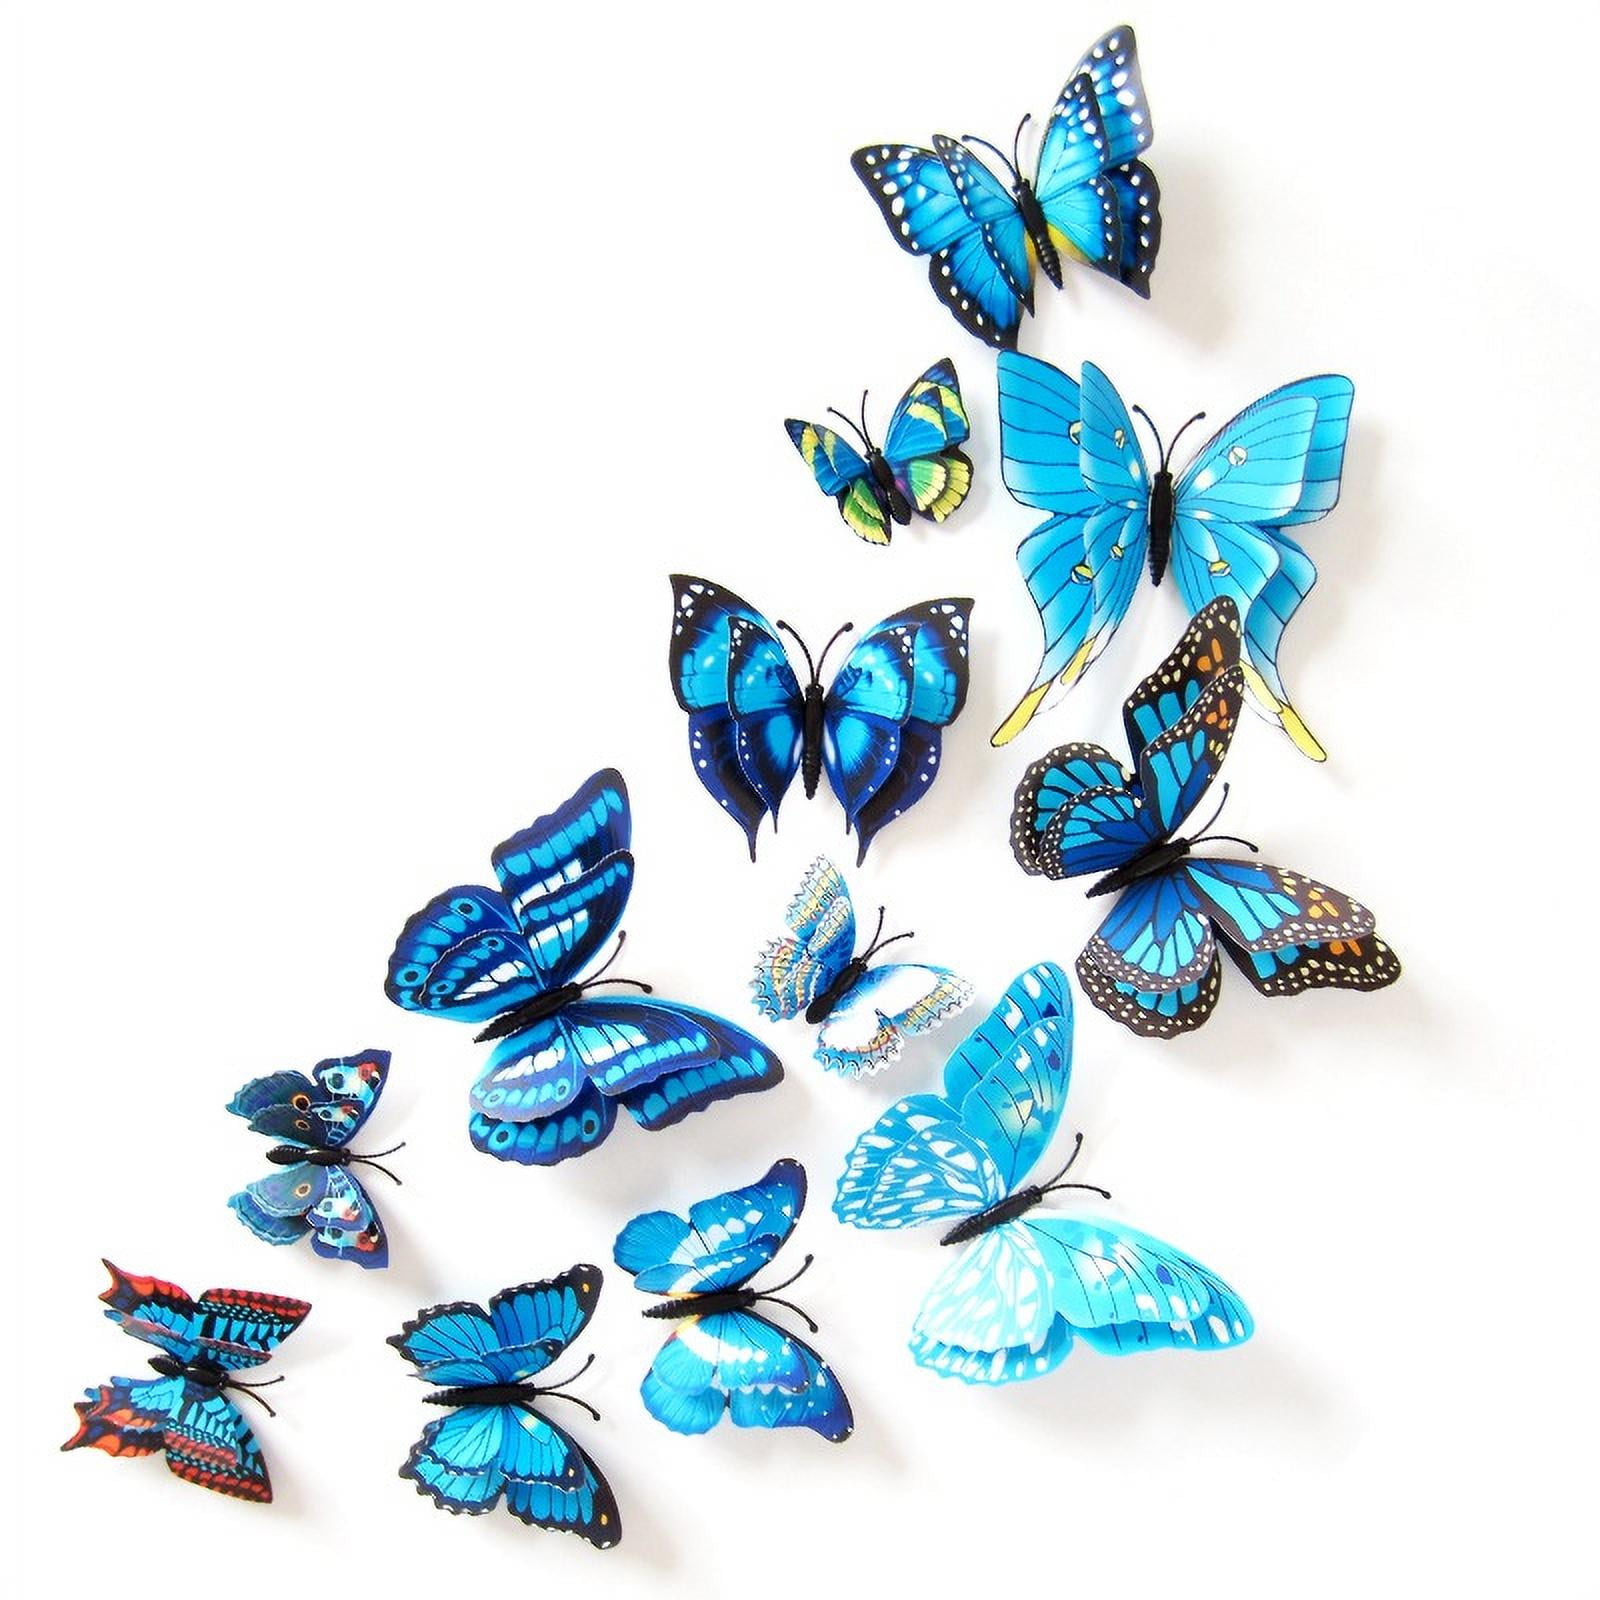 12 X 3D Butterflies Wall Fridge Magnets Stickers Art Home Decal Room Door Decor 